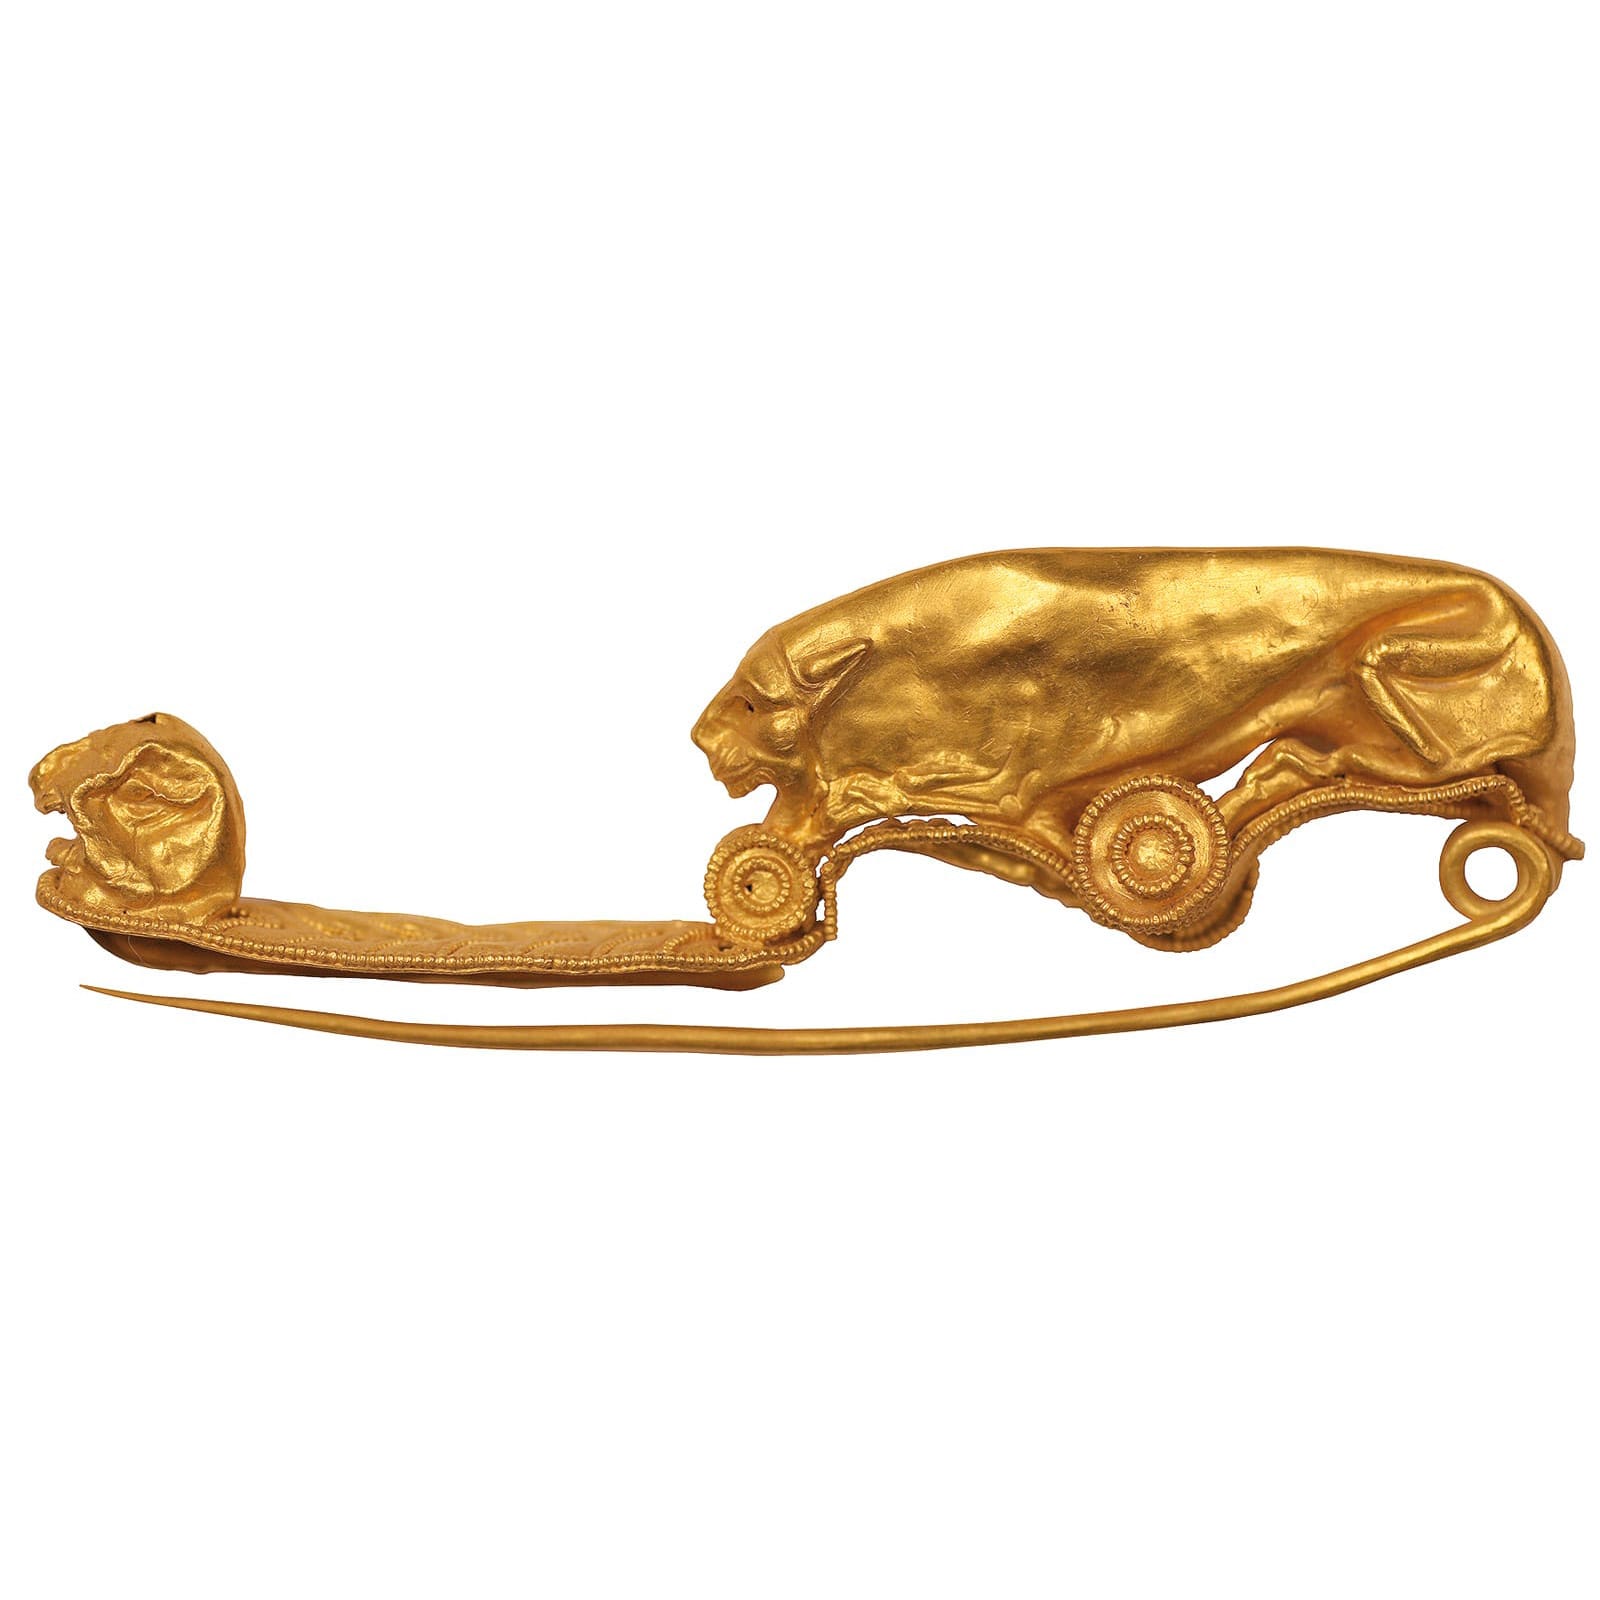 MAEC Cortona | Fibula ad arco conformata a pantera accovacciata in oro